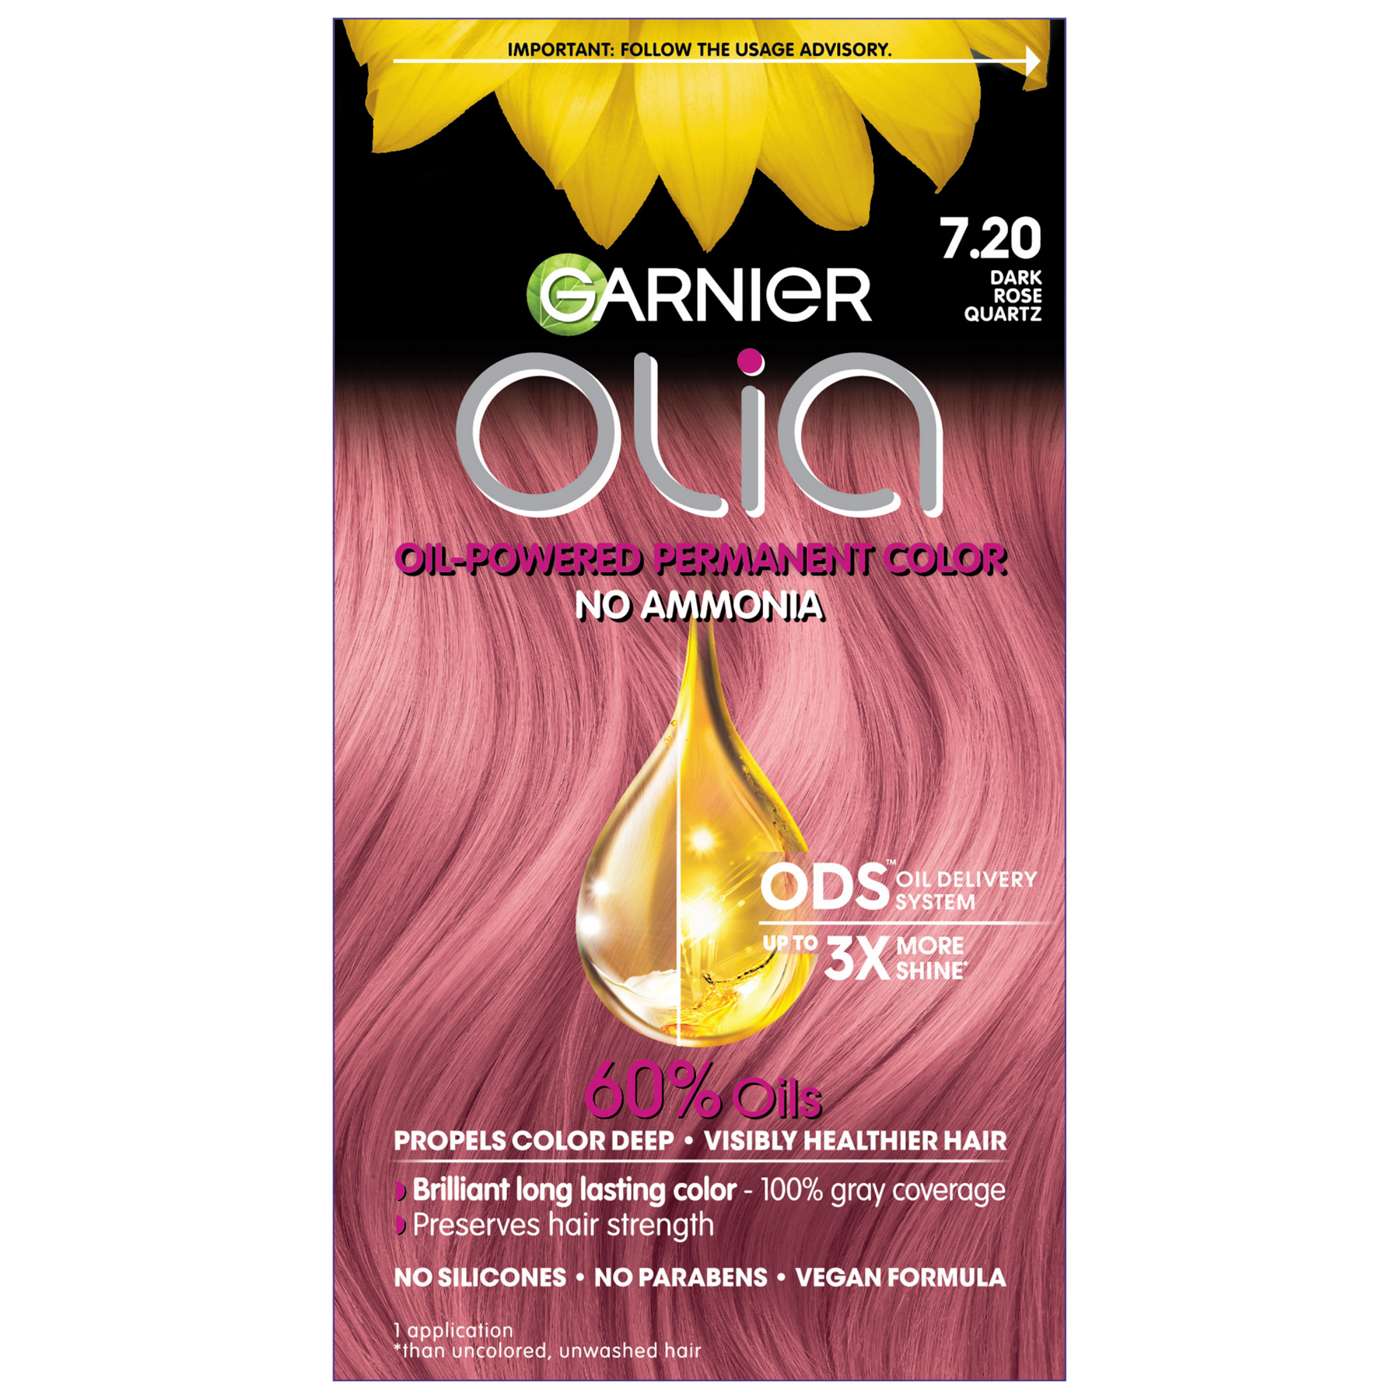 Garnier Olia Oil Powered Ammonia Free Permanent Hair Color 7.20 Dark Rose Quartz; image 7 of 16